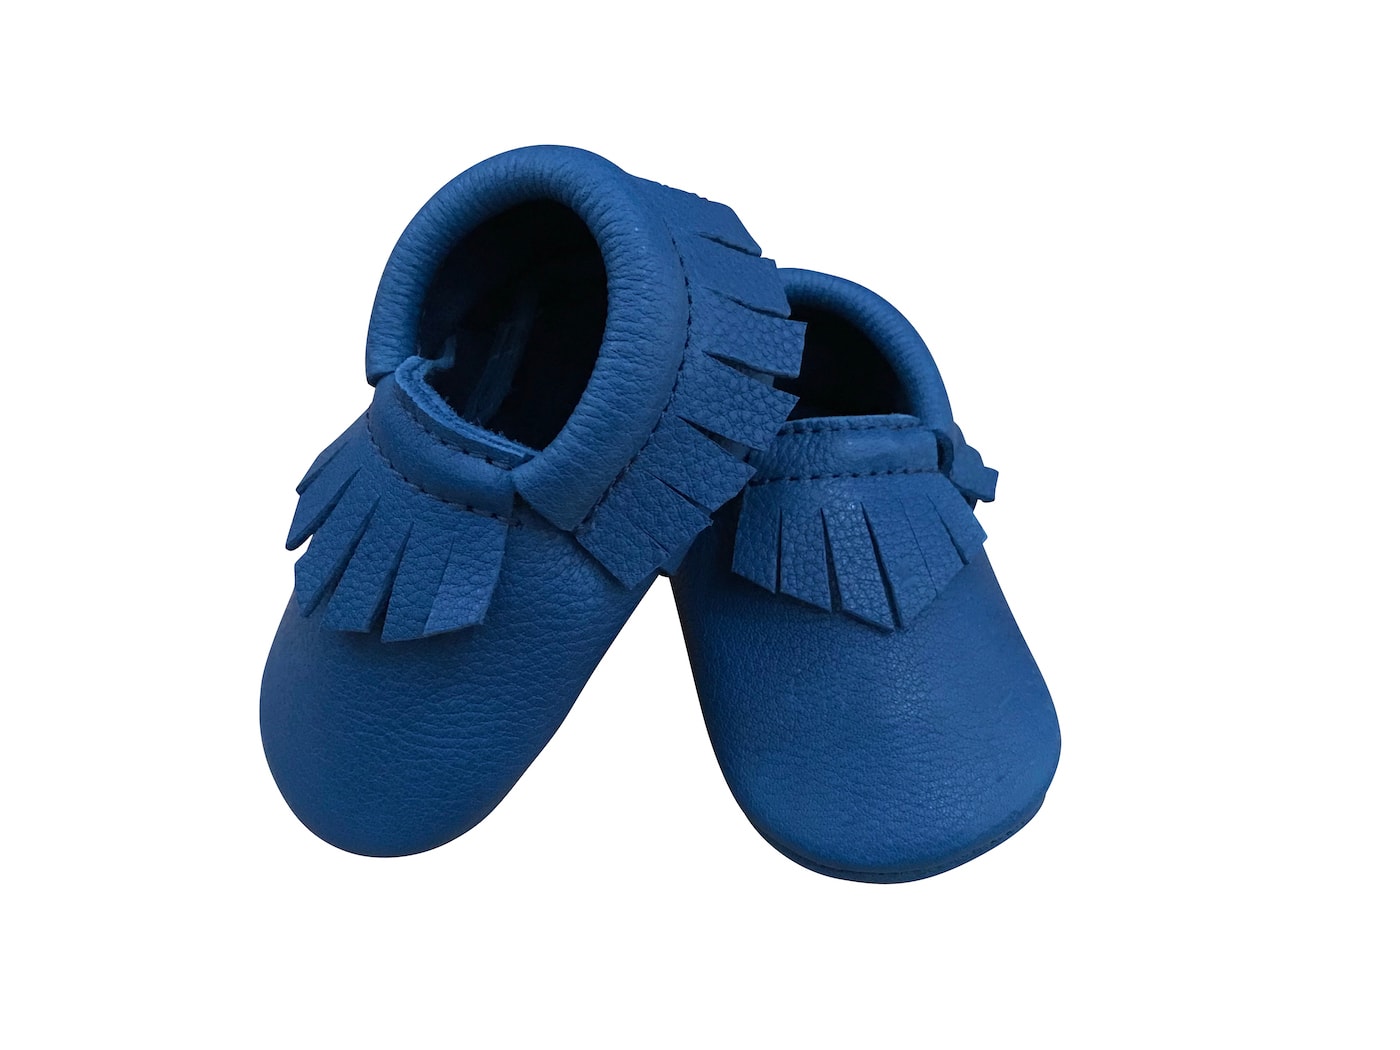 Baby-Schuhe von lilolucky von Familien mit Kindern getestet // HIMBEER